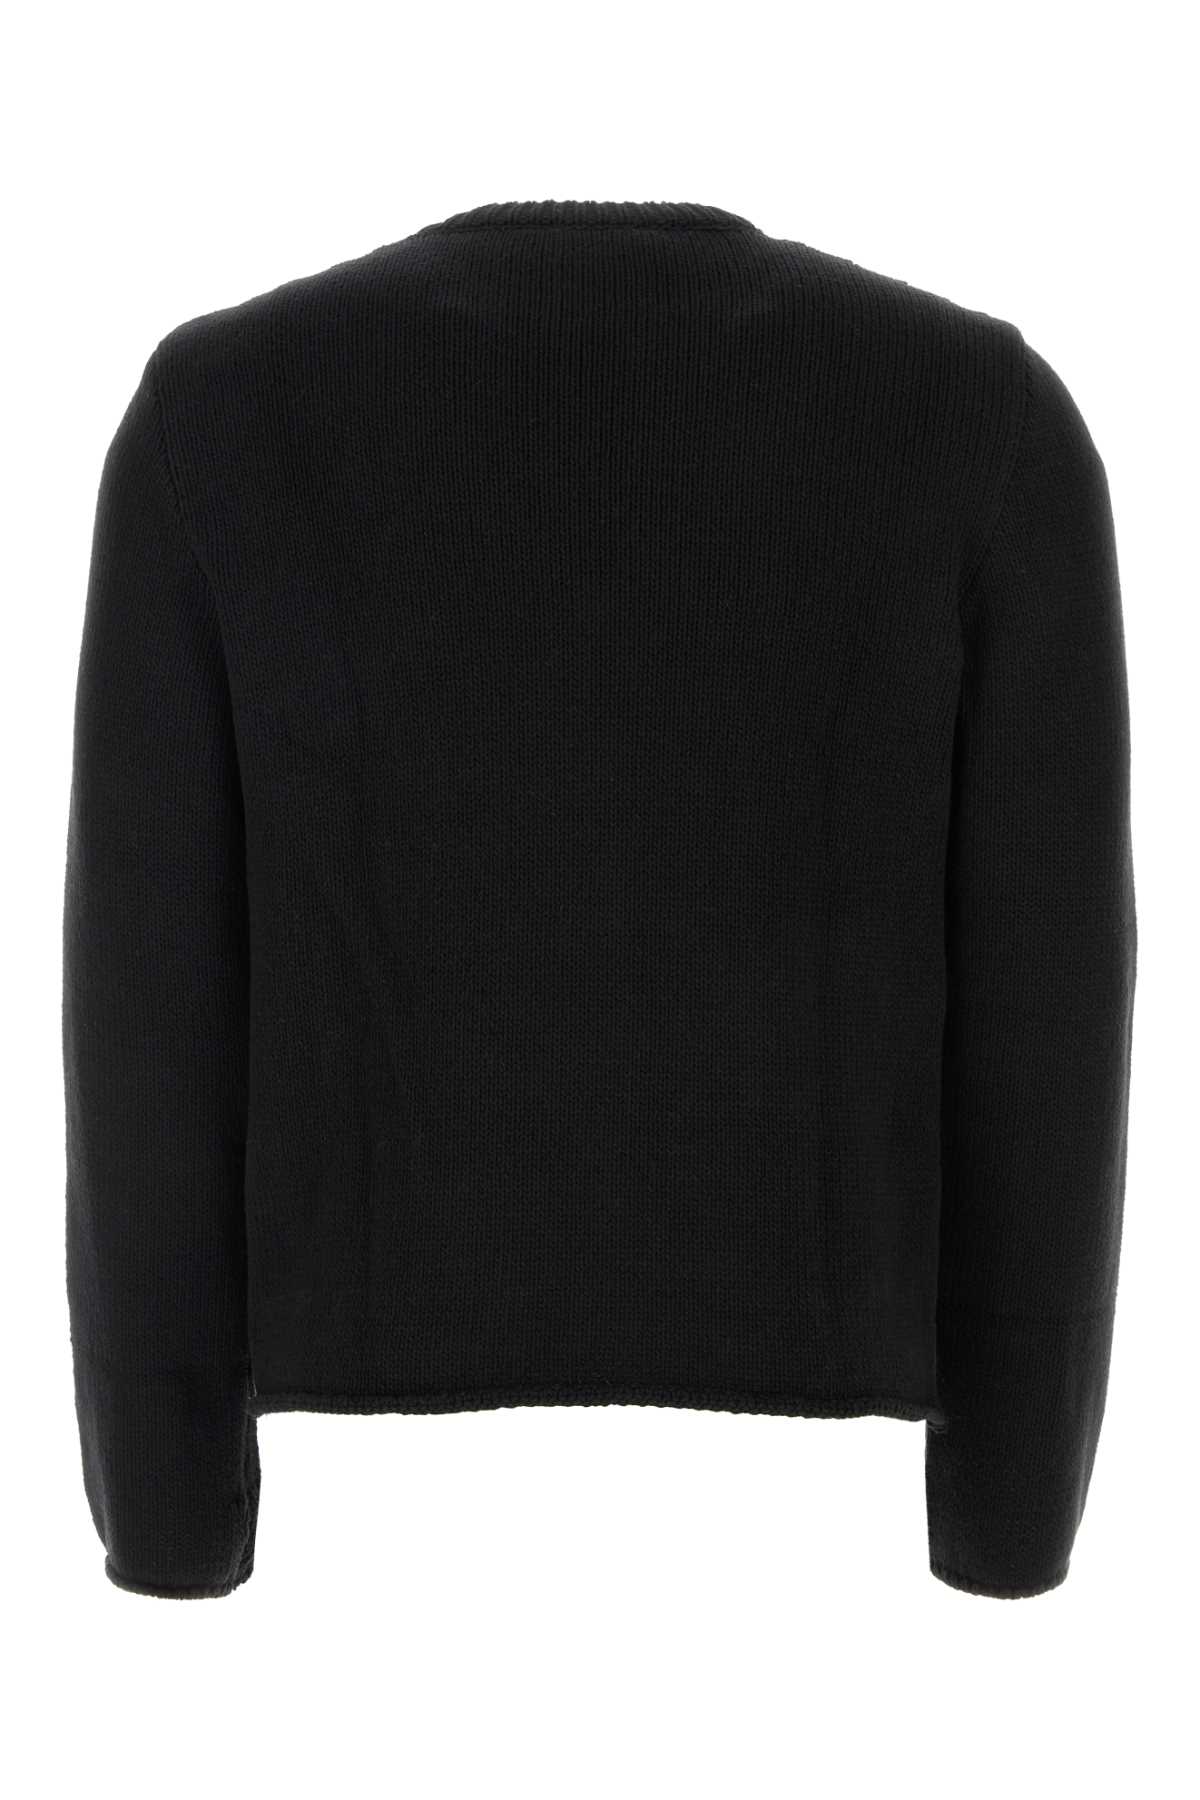 Shop Courrèges Black Cotton Blend Sweater